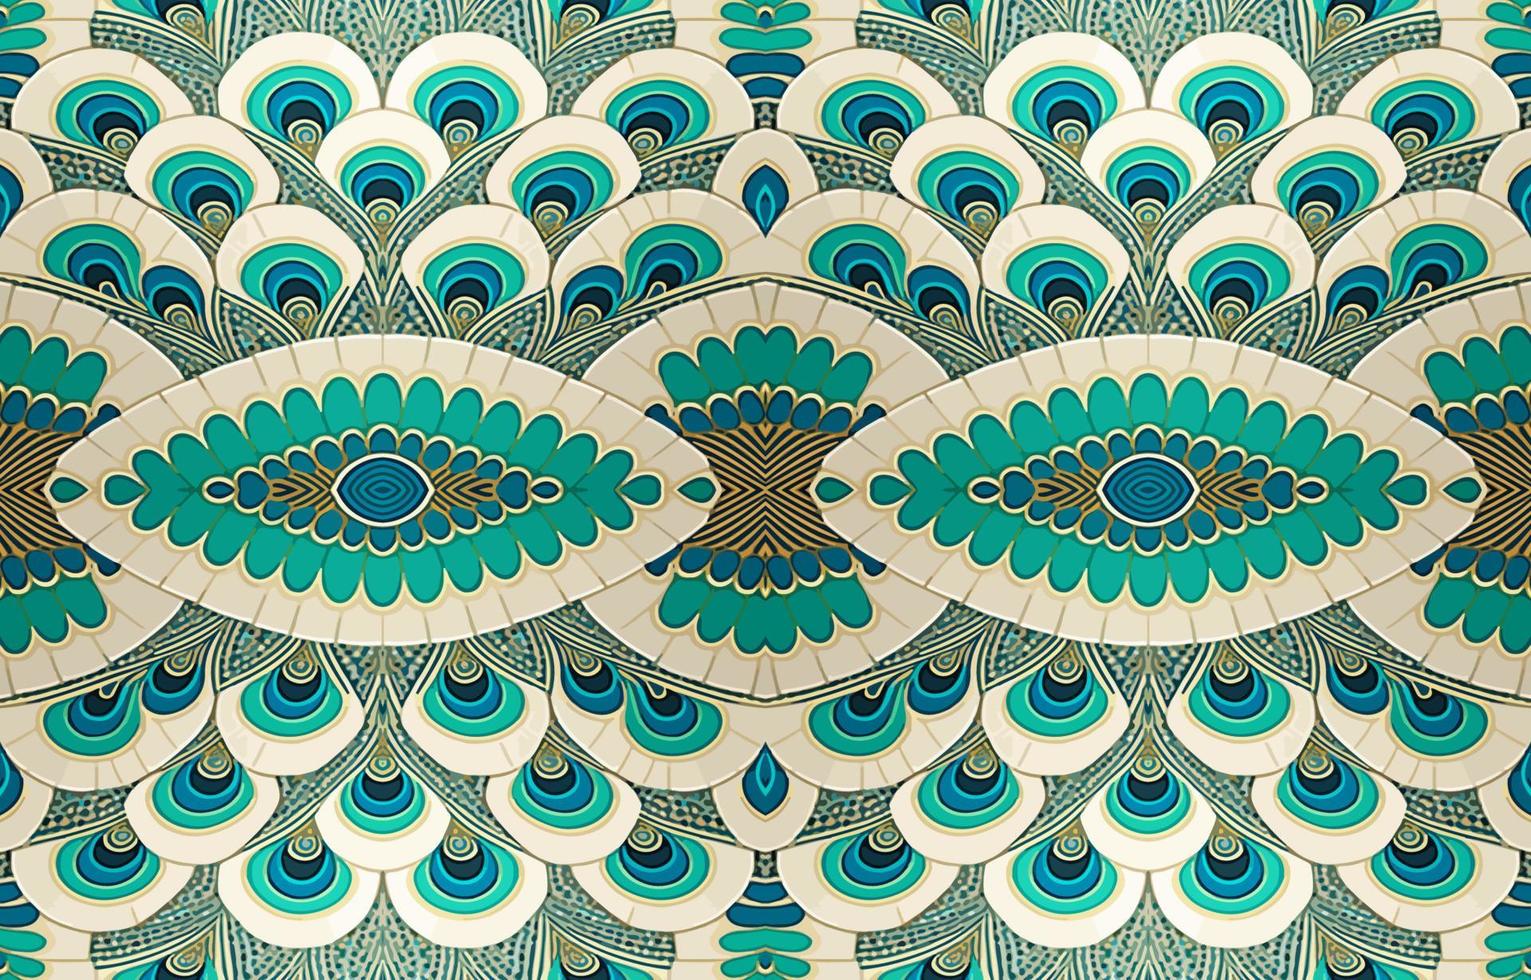 abstrait populaire ethnique tribal géométrique graphique doubler. texture textile en tissu motifs vecteur illustration. fleuri élégant luxe ancien rétro style.